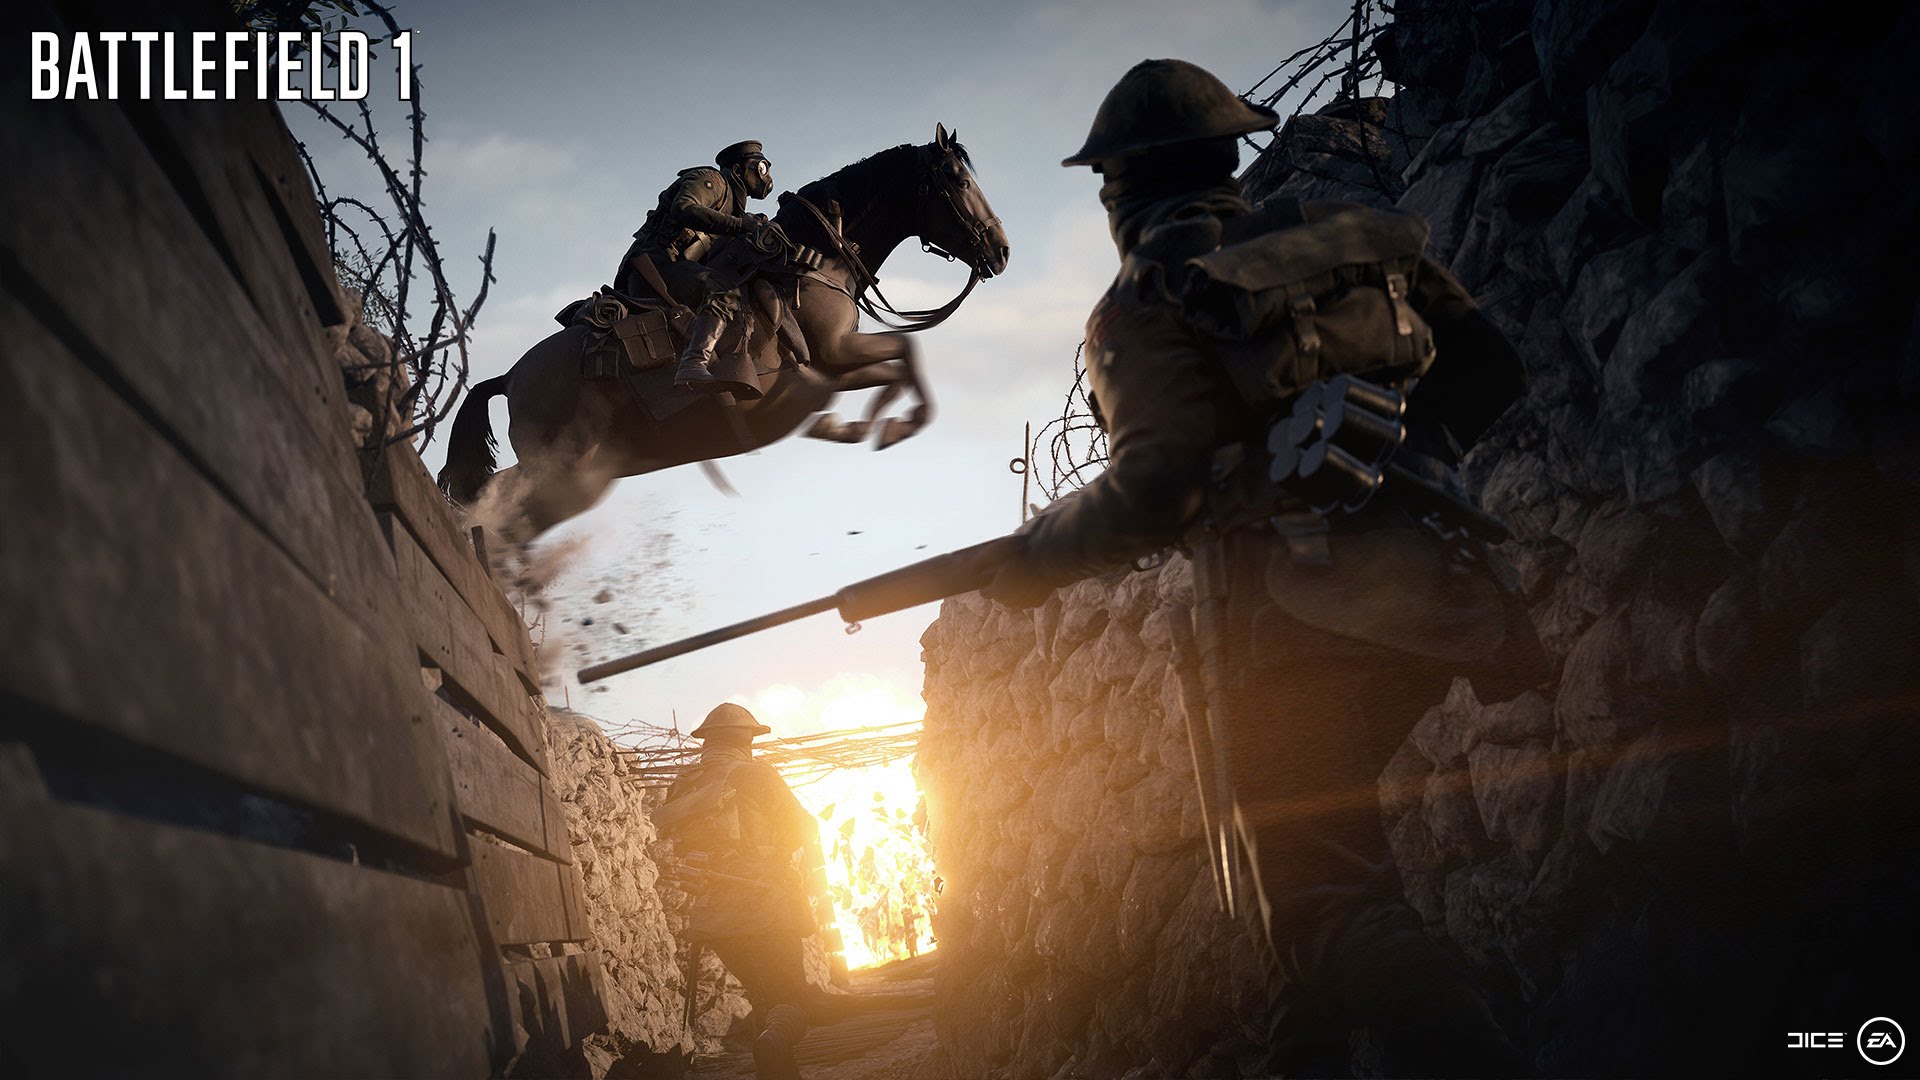 DICE promete un nuevo tráiler de Battlefield 1 en la Gamescom 2016 y se esperan otras novedades.